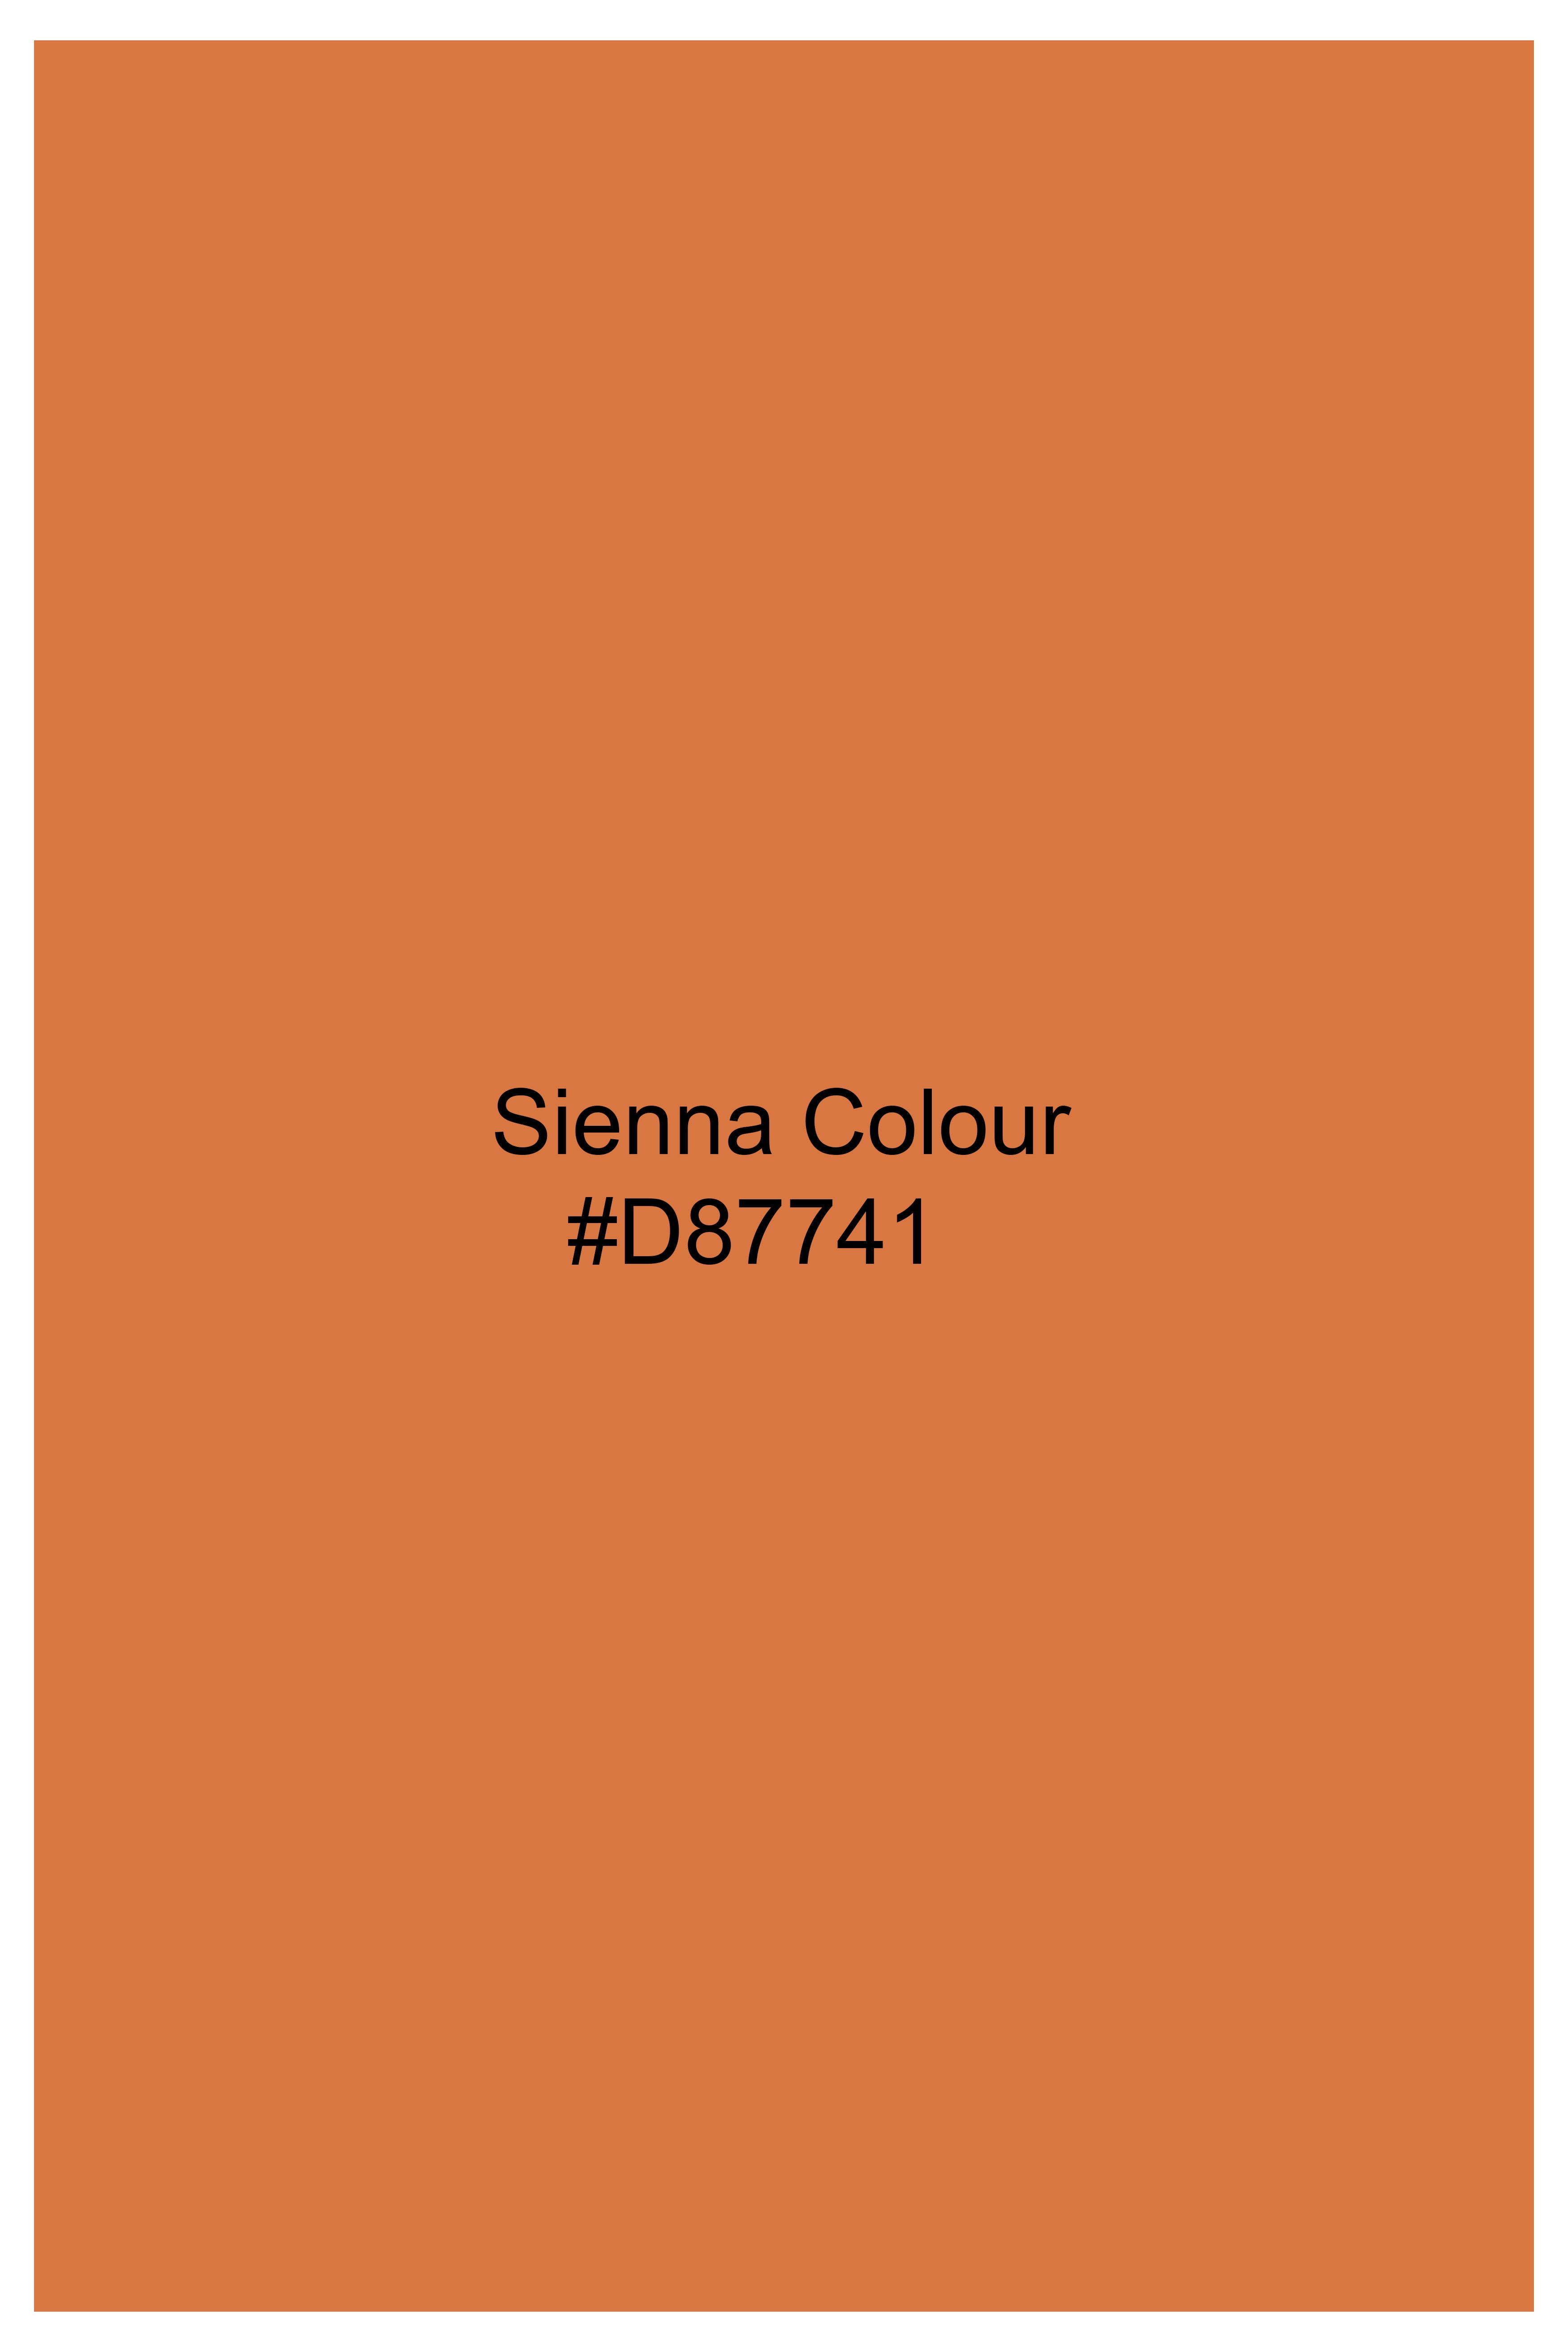 Sienna Orange Cat Hand Painted Premium Cotton Pique Polo TS811-W01-ART-S, TS811-W01-ART-M, TS811-W01-ART-L, TS811-W01-ART-XL, TS811-W01-ART-XXL